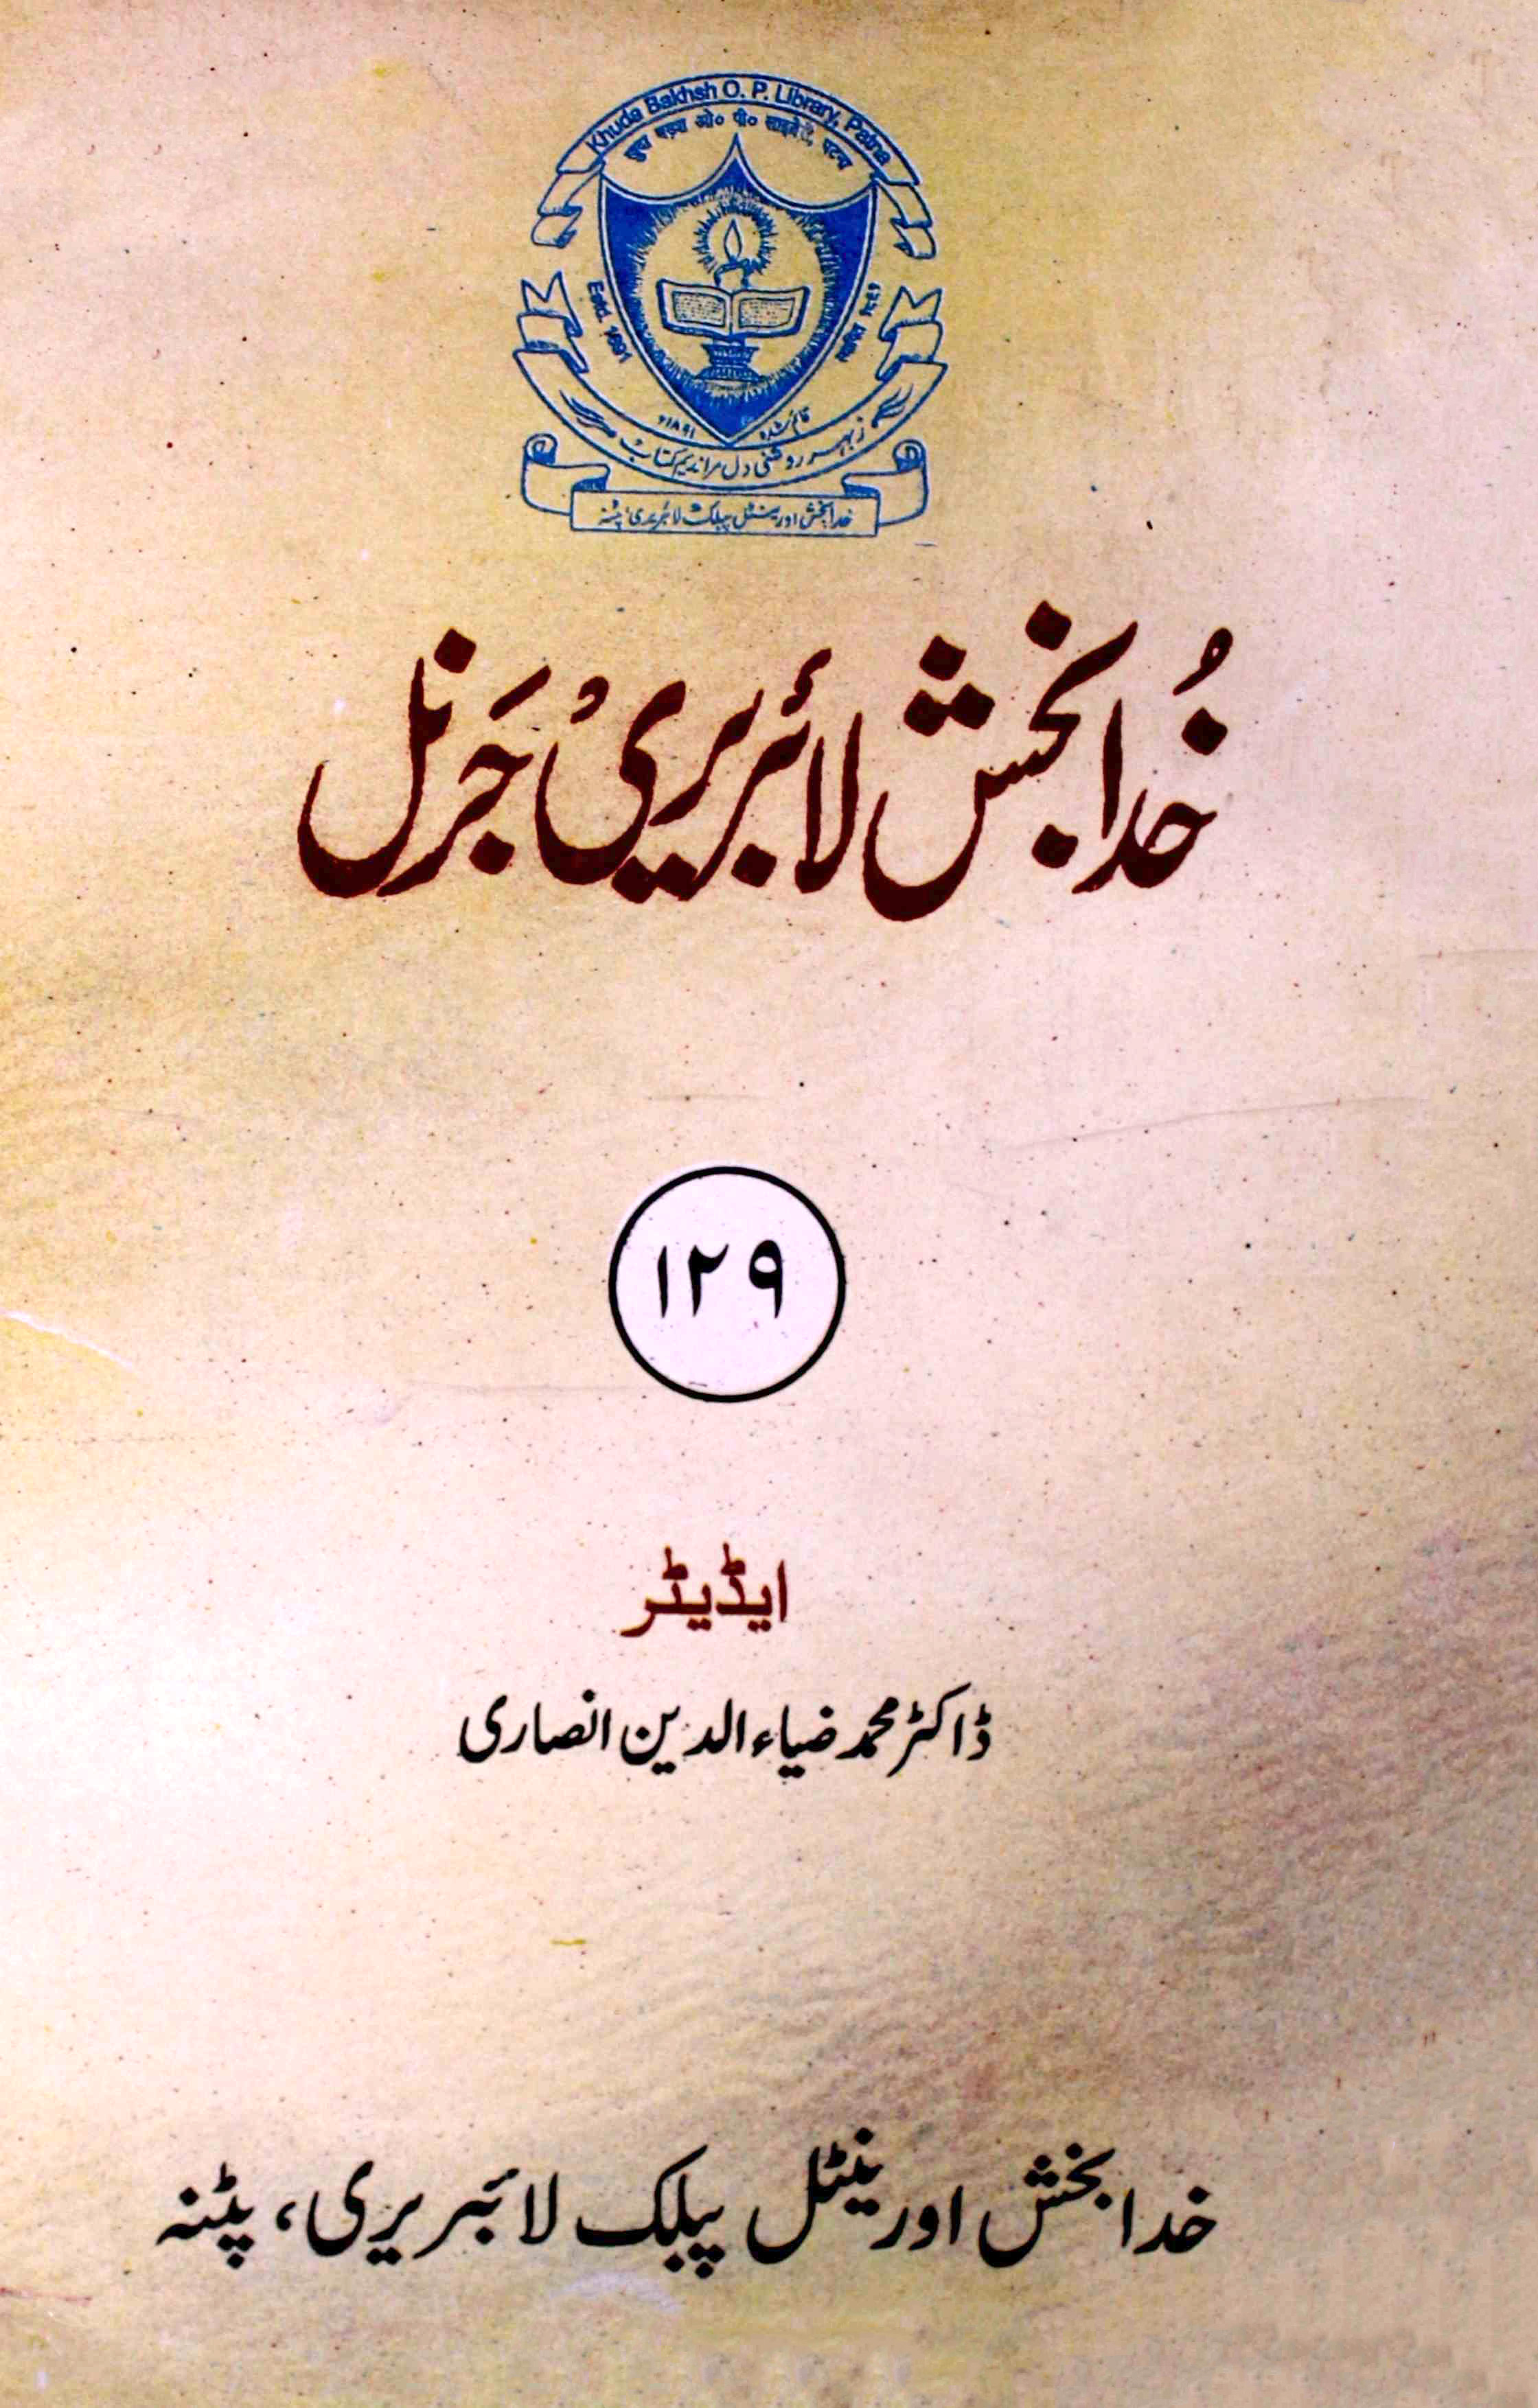 Khuda Bakhsh library Journal 129